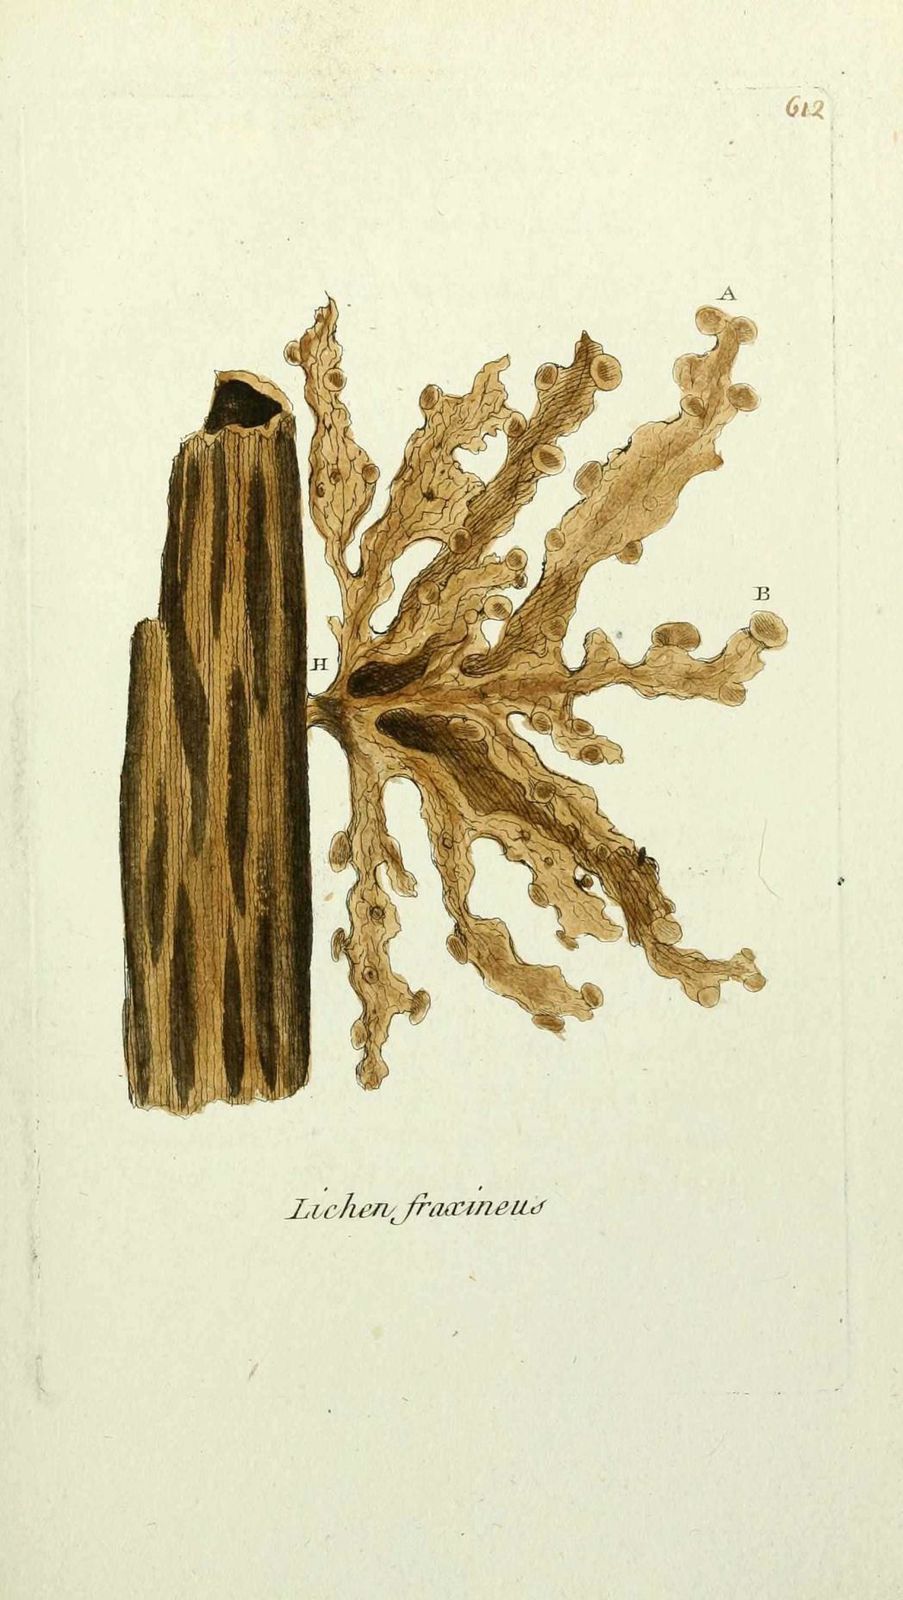 lichen du frene - lichen fraxineus ( rage-dieu, teigne d ar